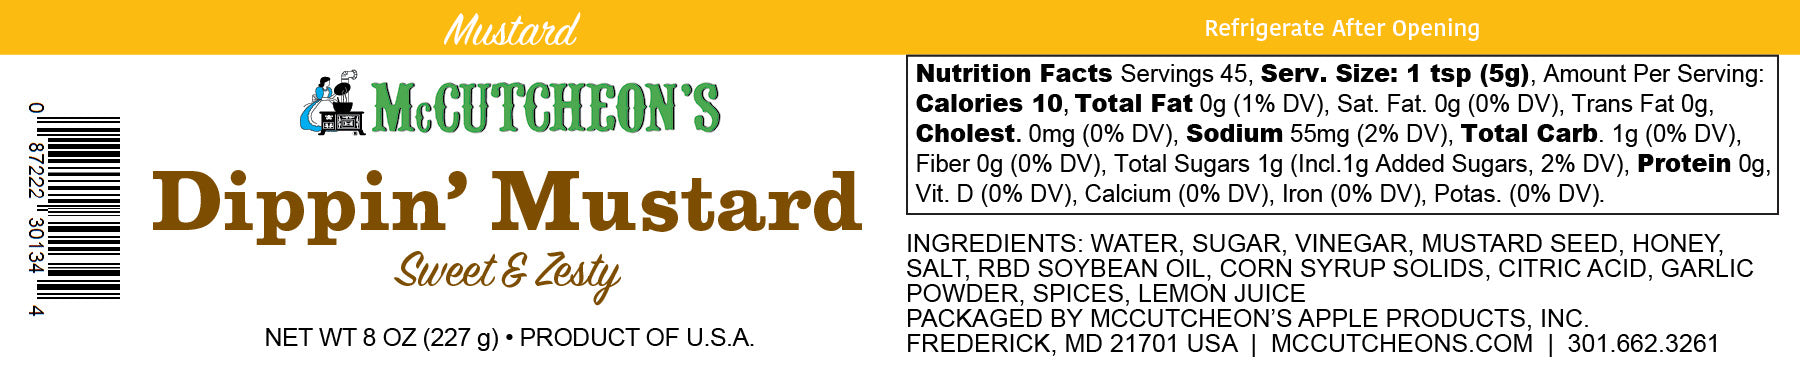 nutritional label for McCutcheon's mini dippin' mustard